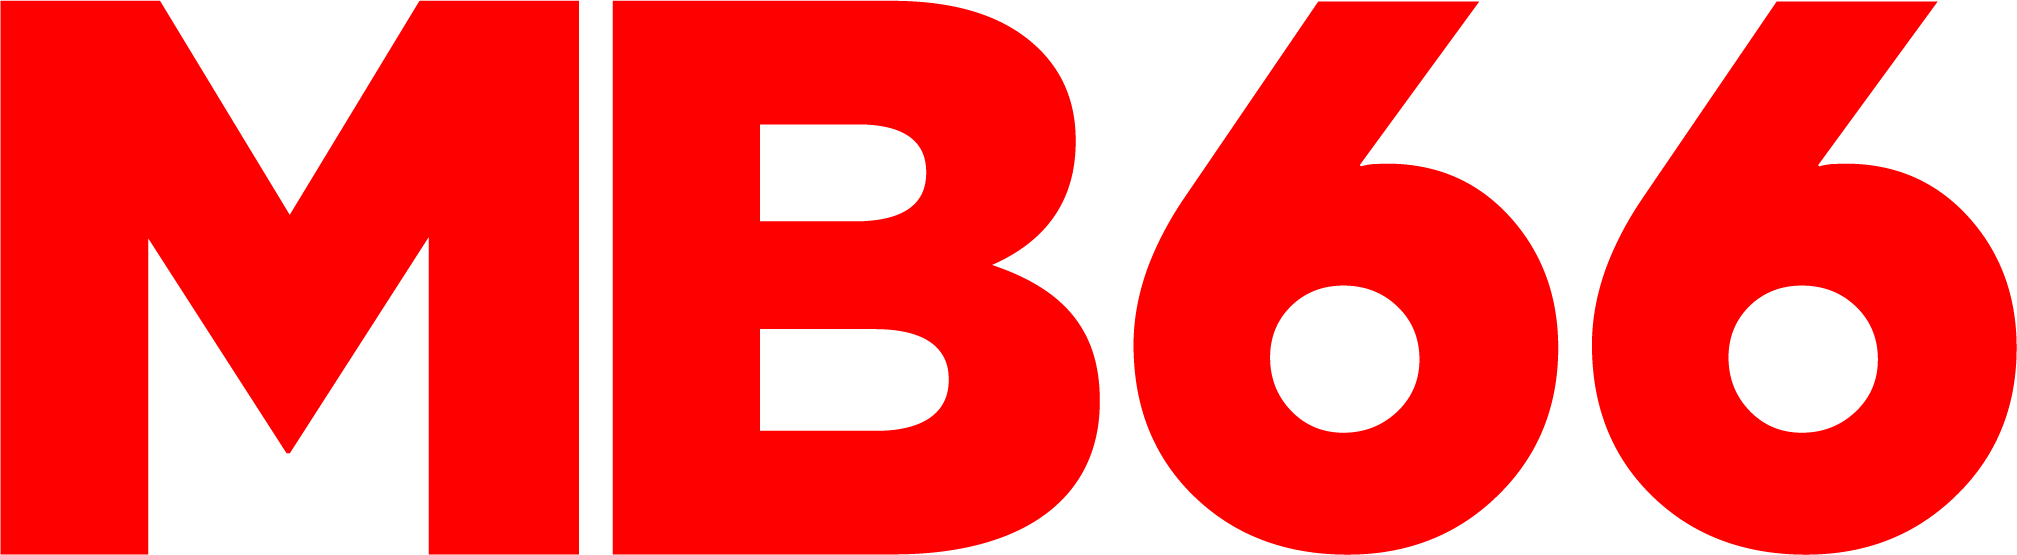 Logo MB66